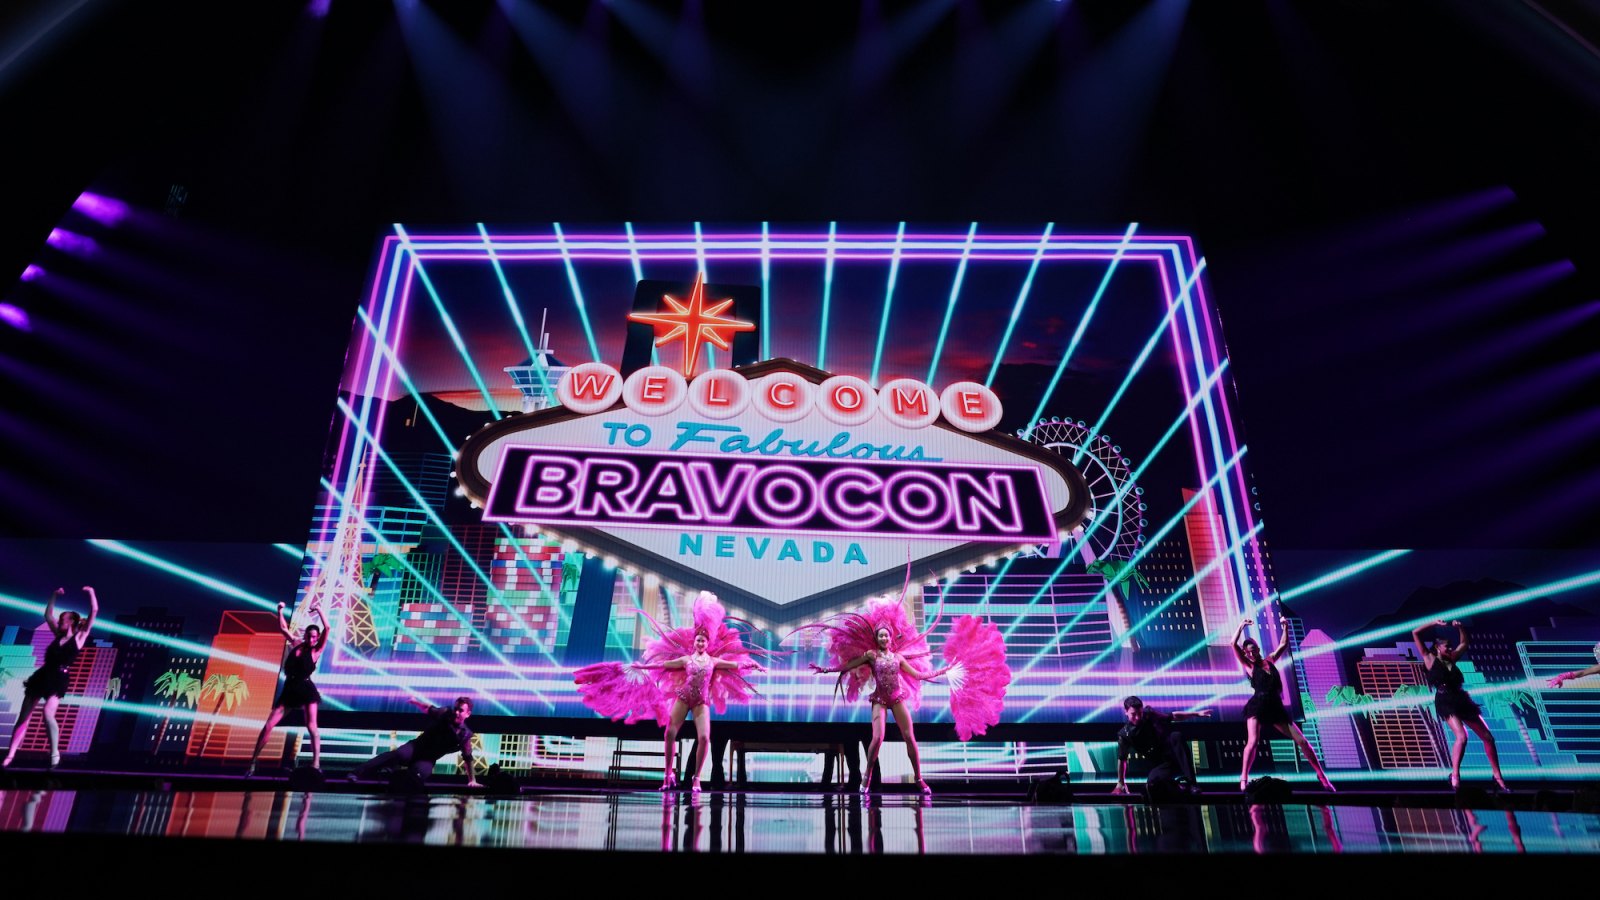 Víkendové průkazy Bravocon 2023 jsou vyprodány-ale 1denní vstupenky jsou stále k dispozici